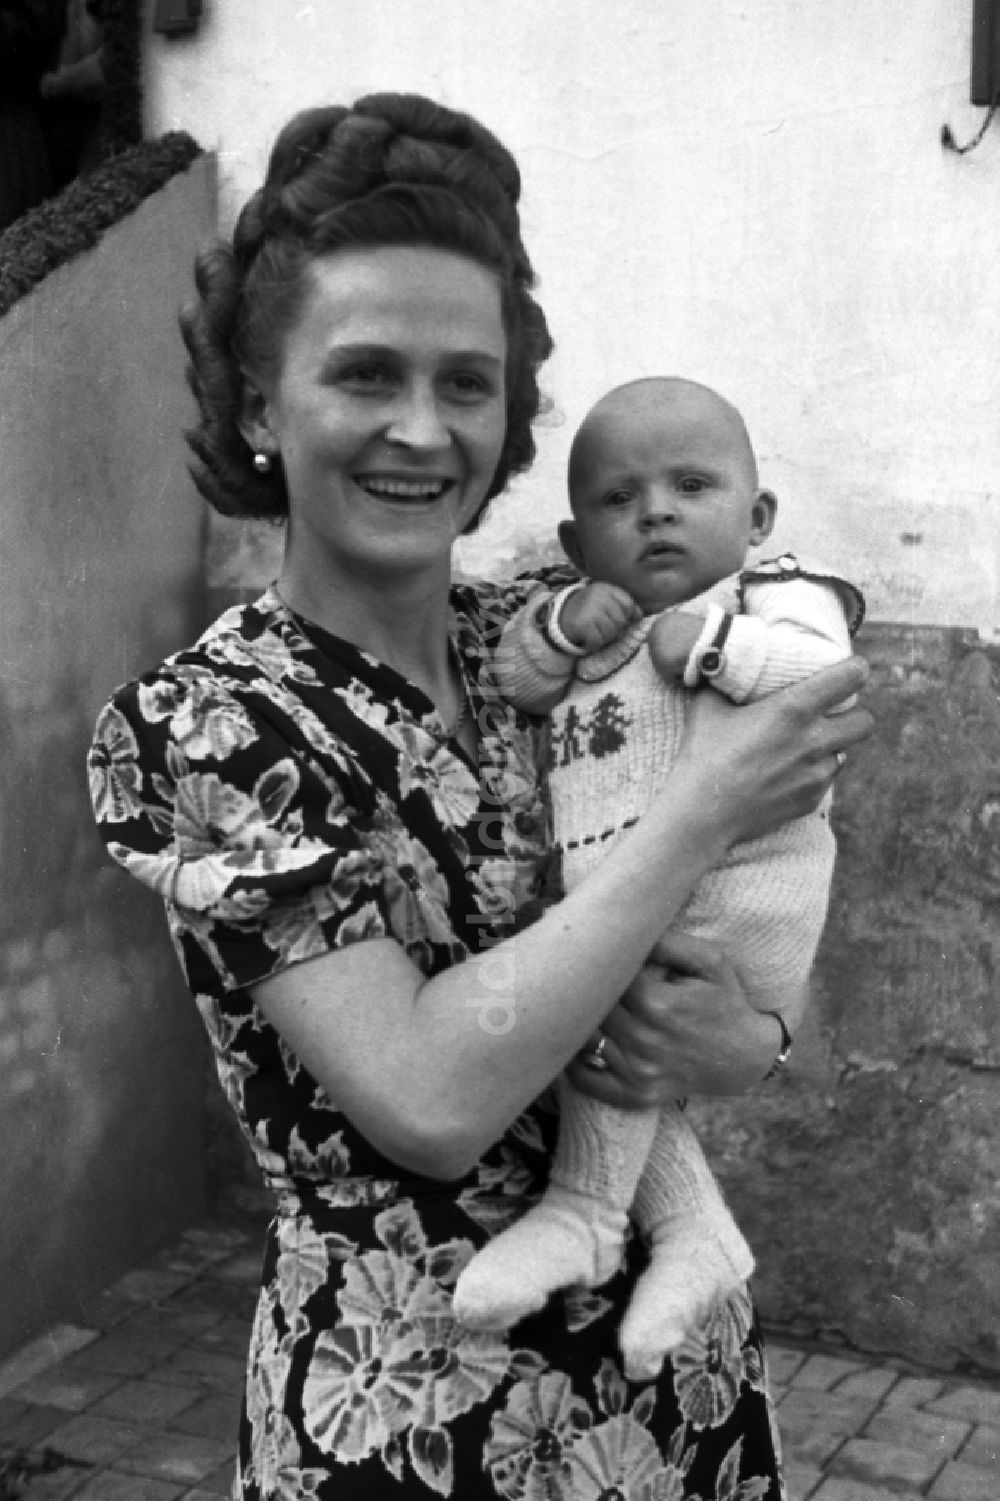 Merseburg: Frau mit Baby auf dem Arm in Merseburg im Bundesland Sachsen-Anhalt auf dem Gebiet der ehemaligen DDR, Deutsche Demokratische Republik